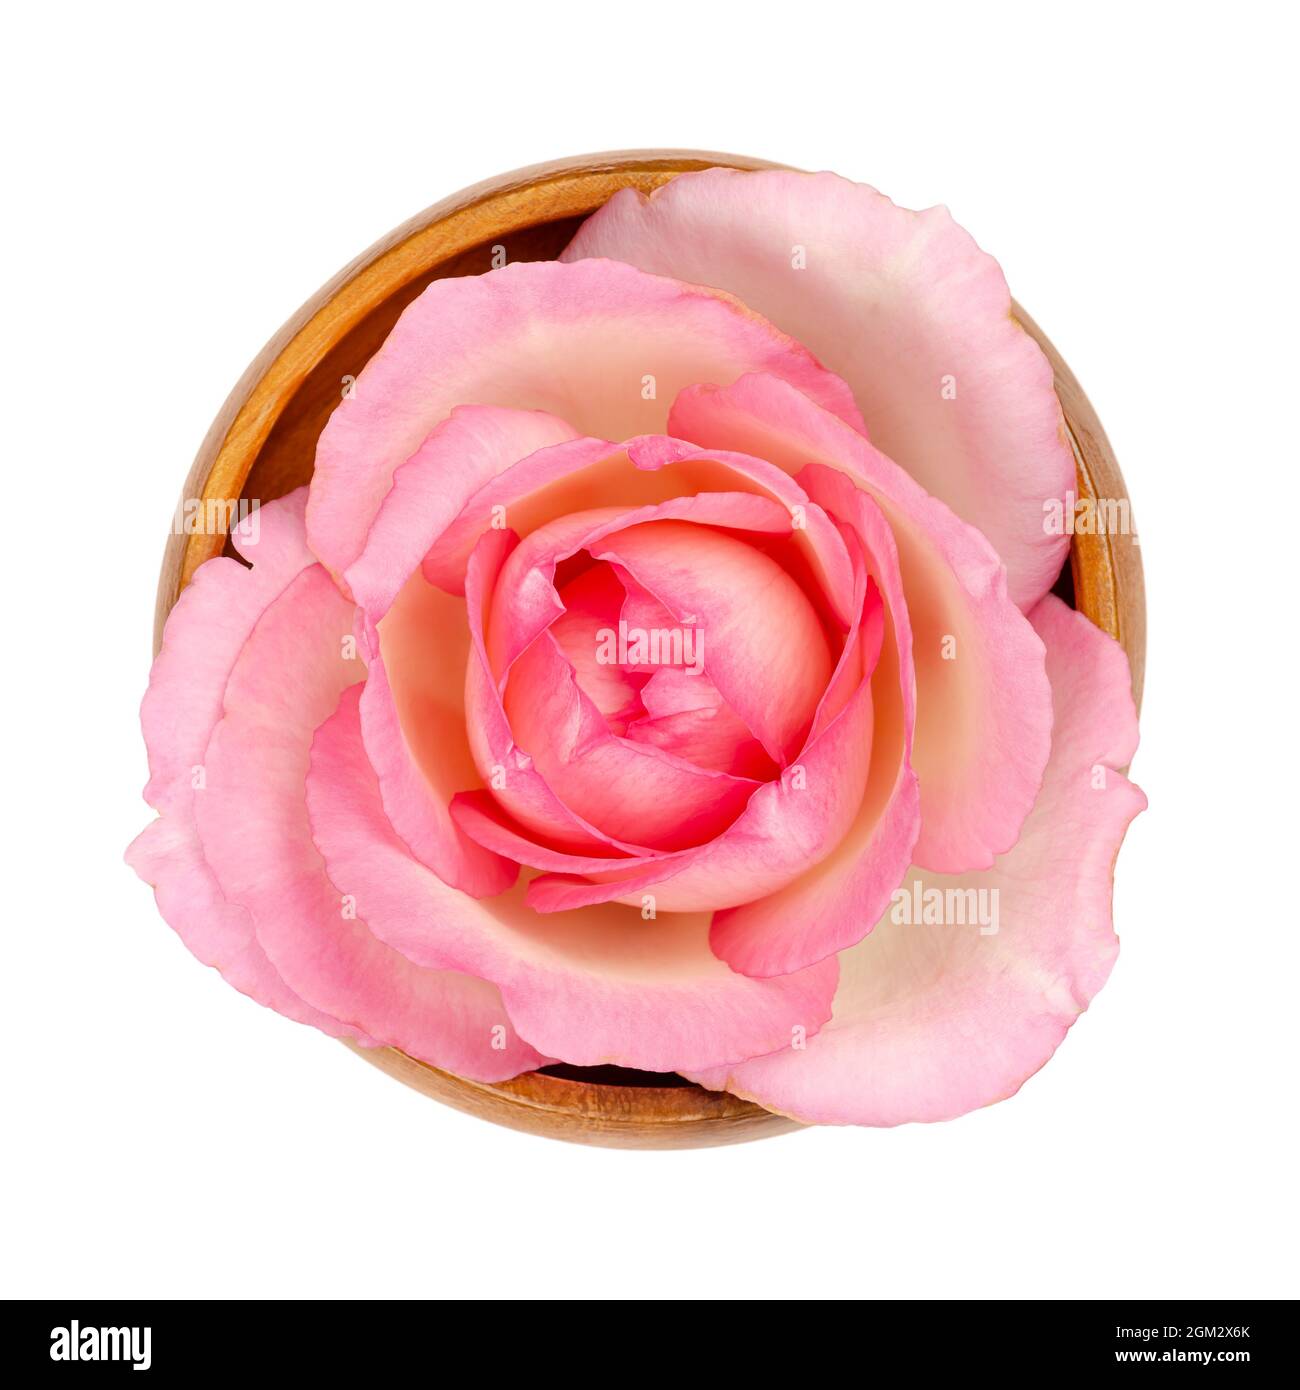 Rosenblüte, in einer Holzschale. Frischer, hellrosa gefärbter Blütenkopf einer Gartenrose, auch bekannt als China-, chinesische oder bengalische Rose, Rosa chinensis. Stockfoto